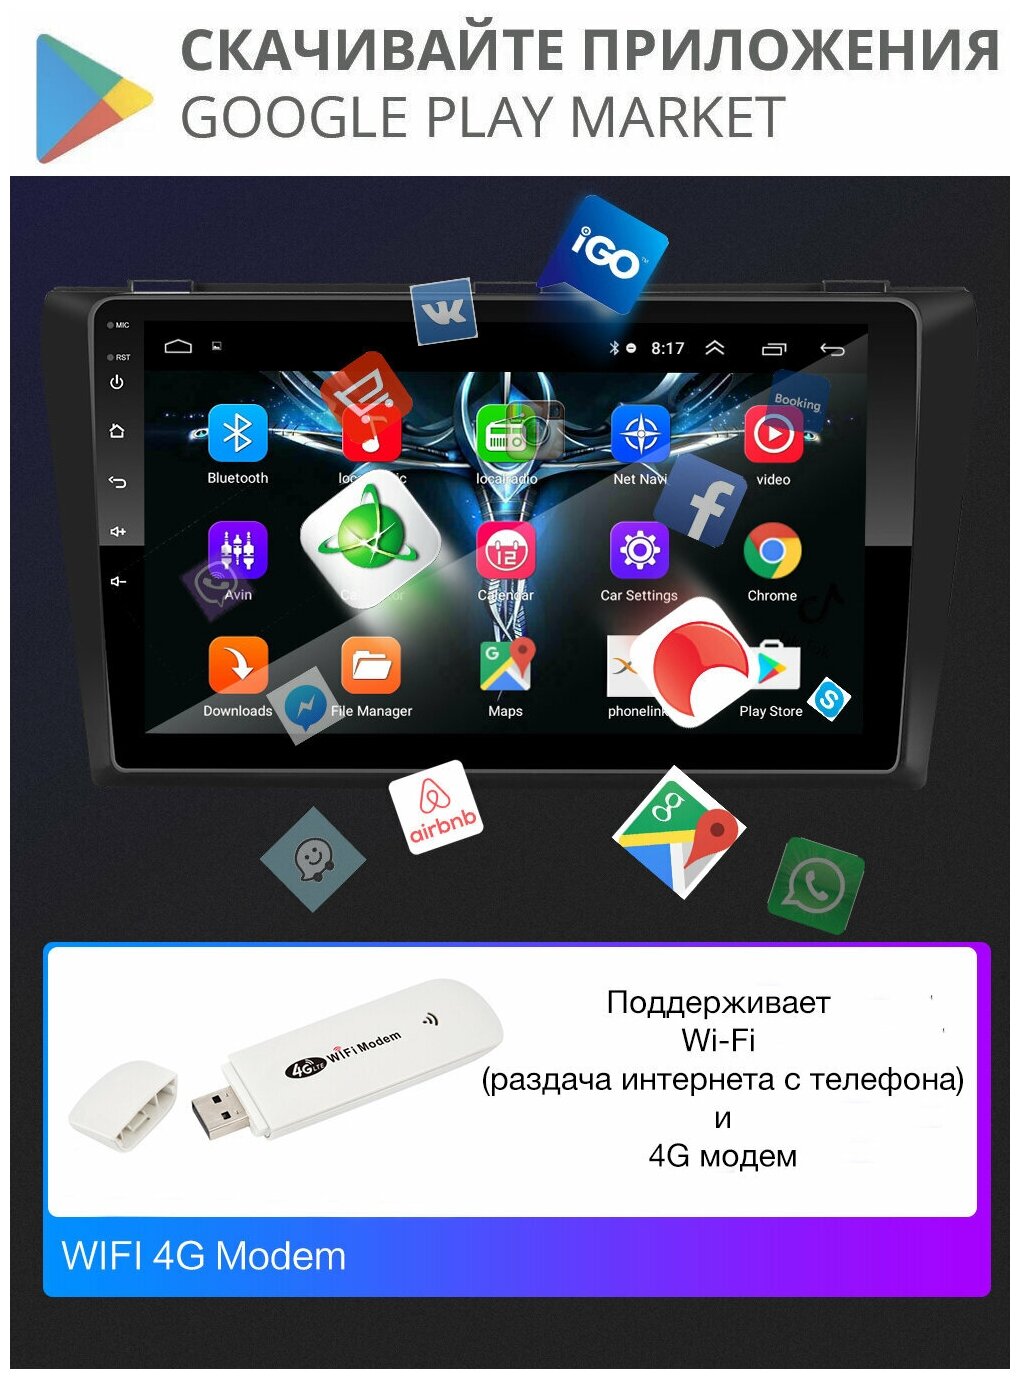 Автомагнитола для MITSUBISHI Outlander XL (2006-2012), Android 9, 2/32 Gb, Wi-Fi, Bluetooth, Hands Free, разделение экрана, поддержка кнопок на руле